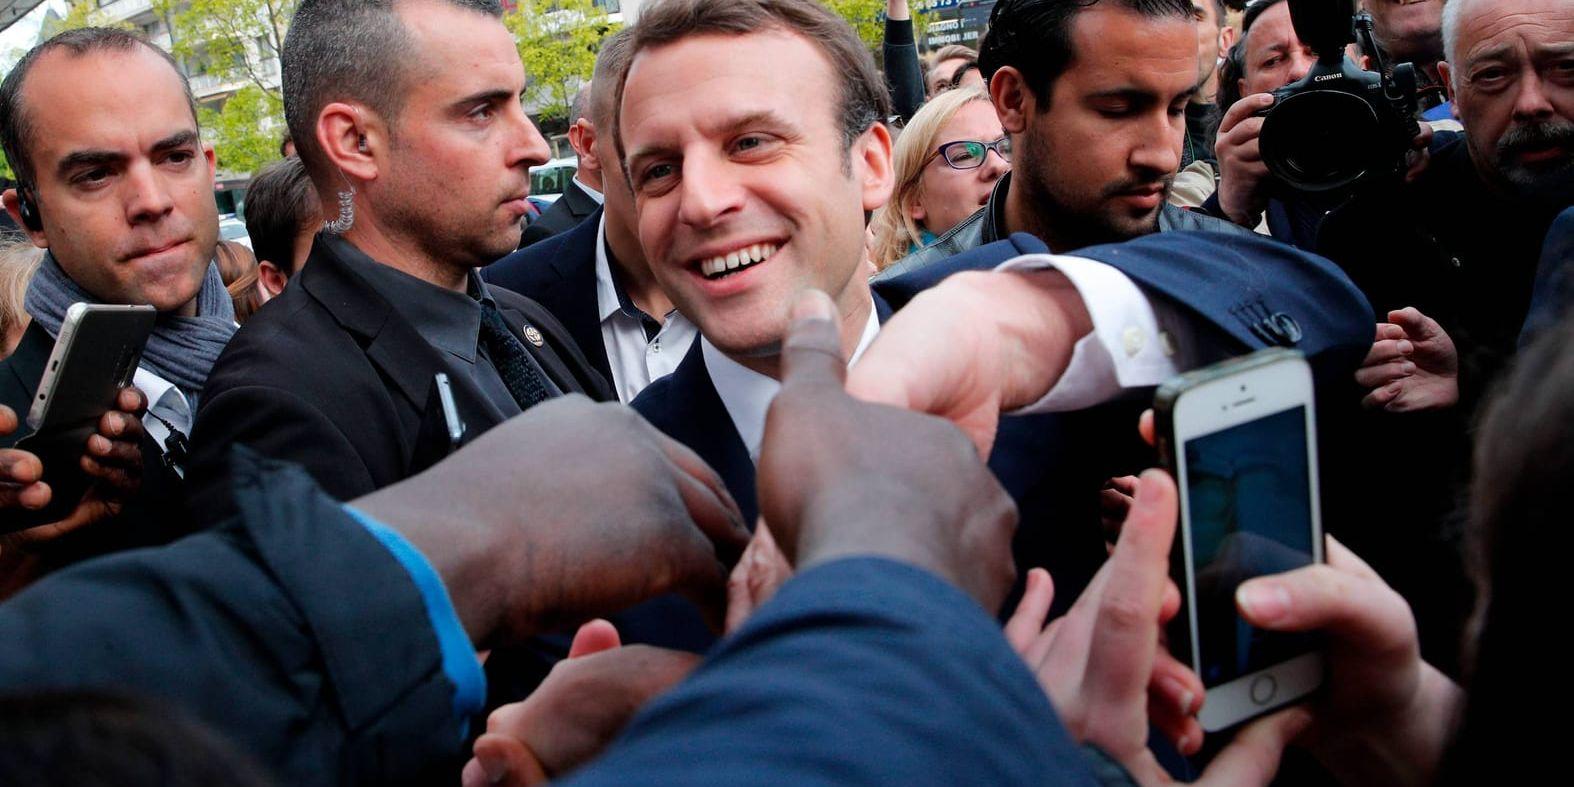 Mittenvänsterliberale Emmanuel Macron, som representerar det bara ett år gamla partiet En marche. Arkivbild.